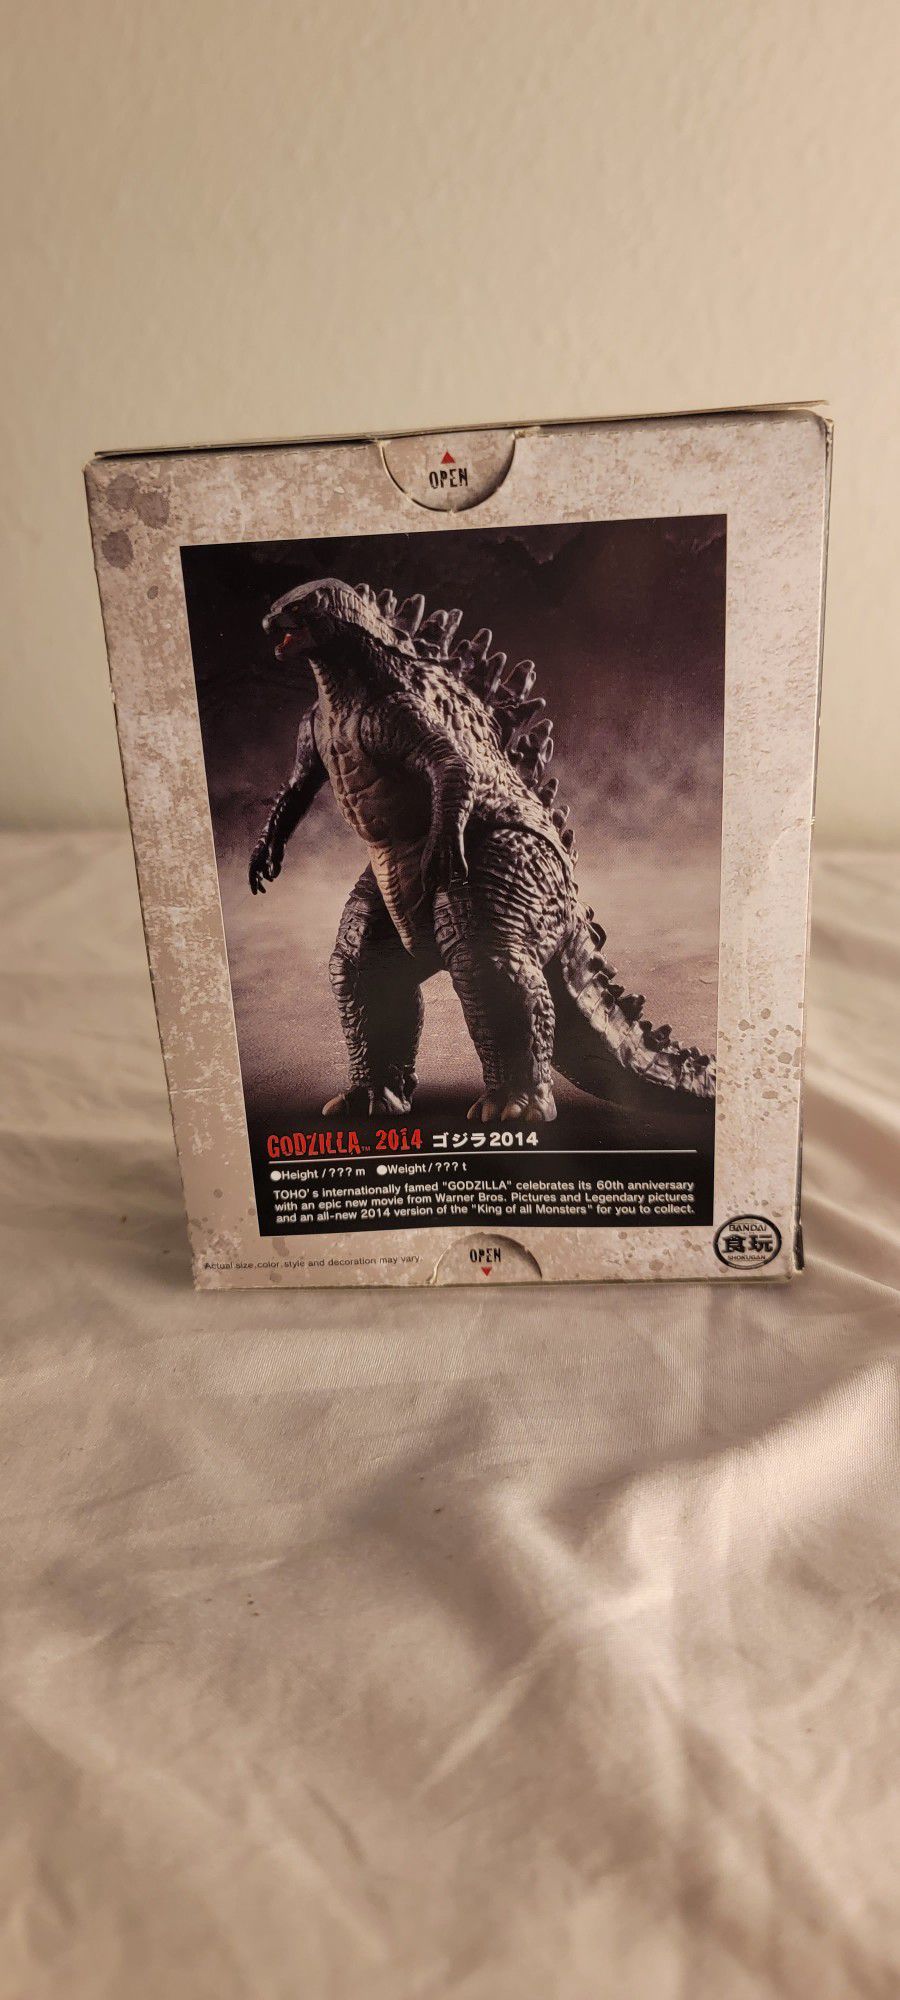 Godzilla 2014 Collectible Japanese Figure 60th Anniversary